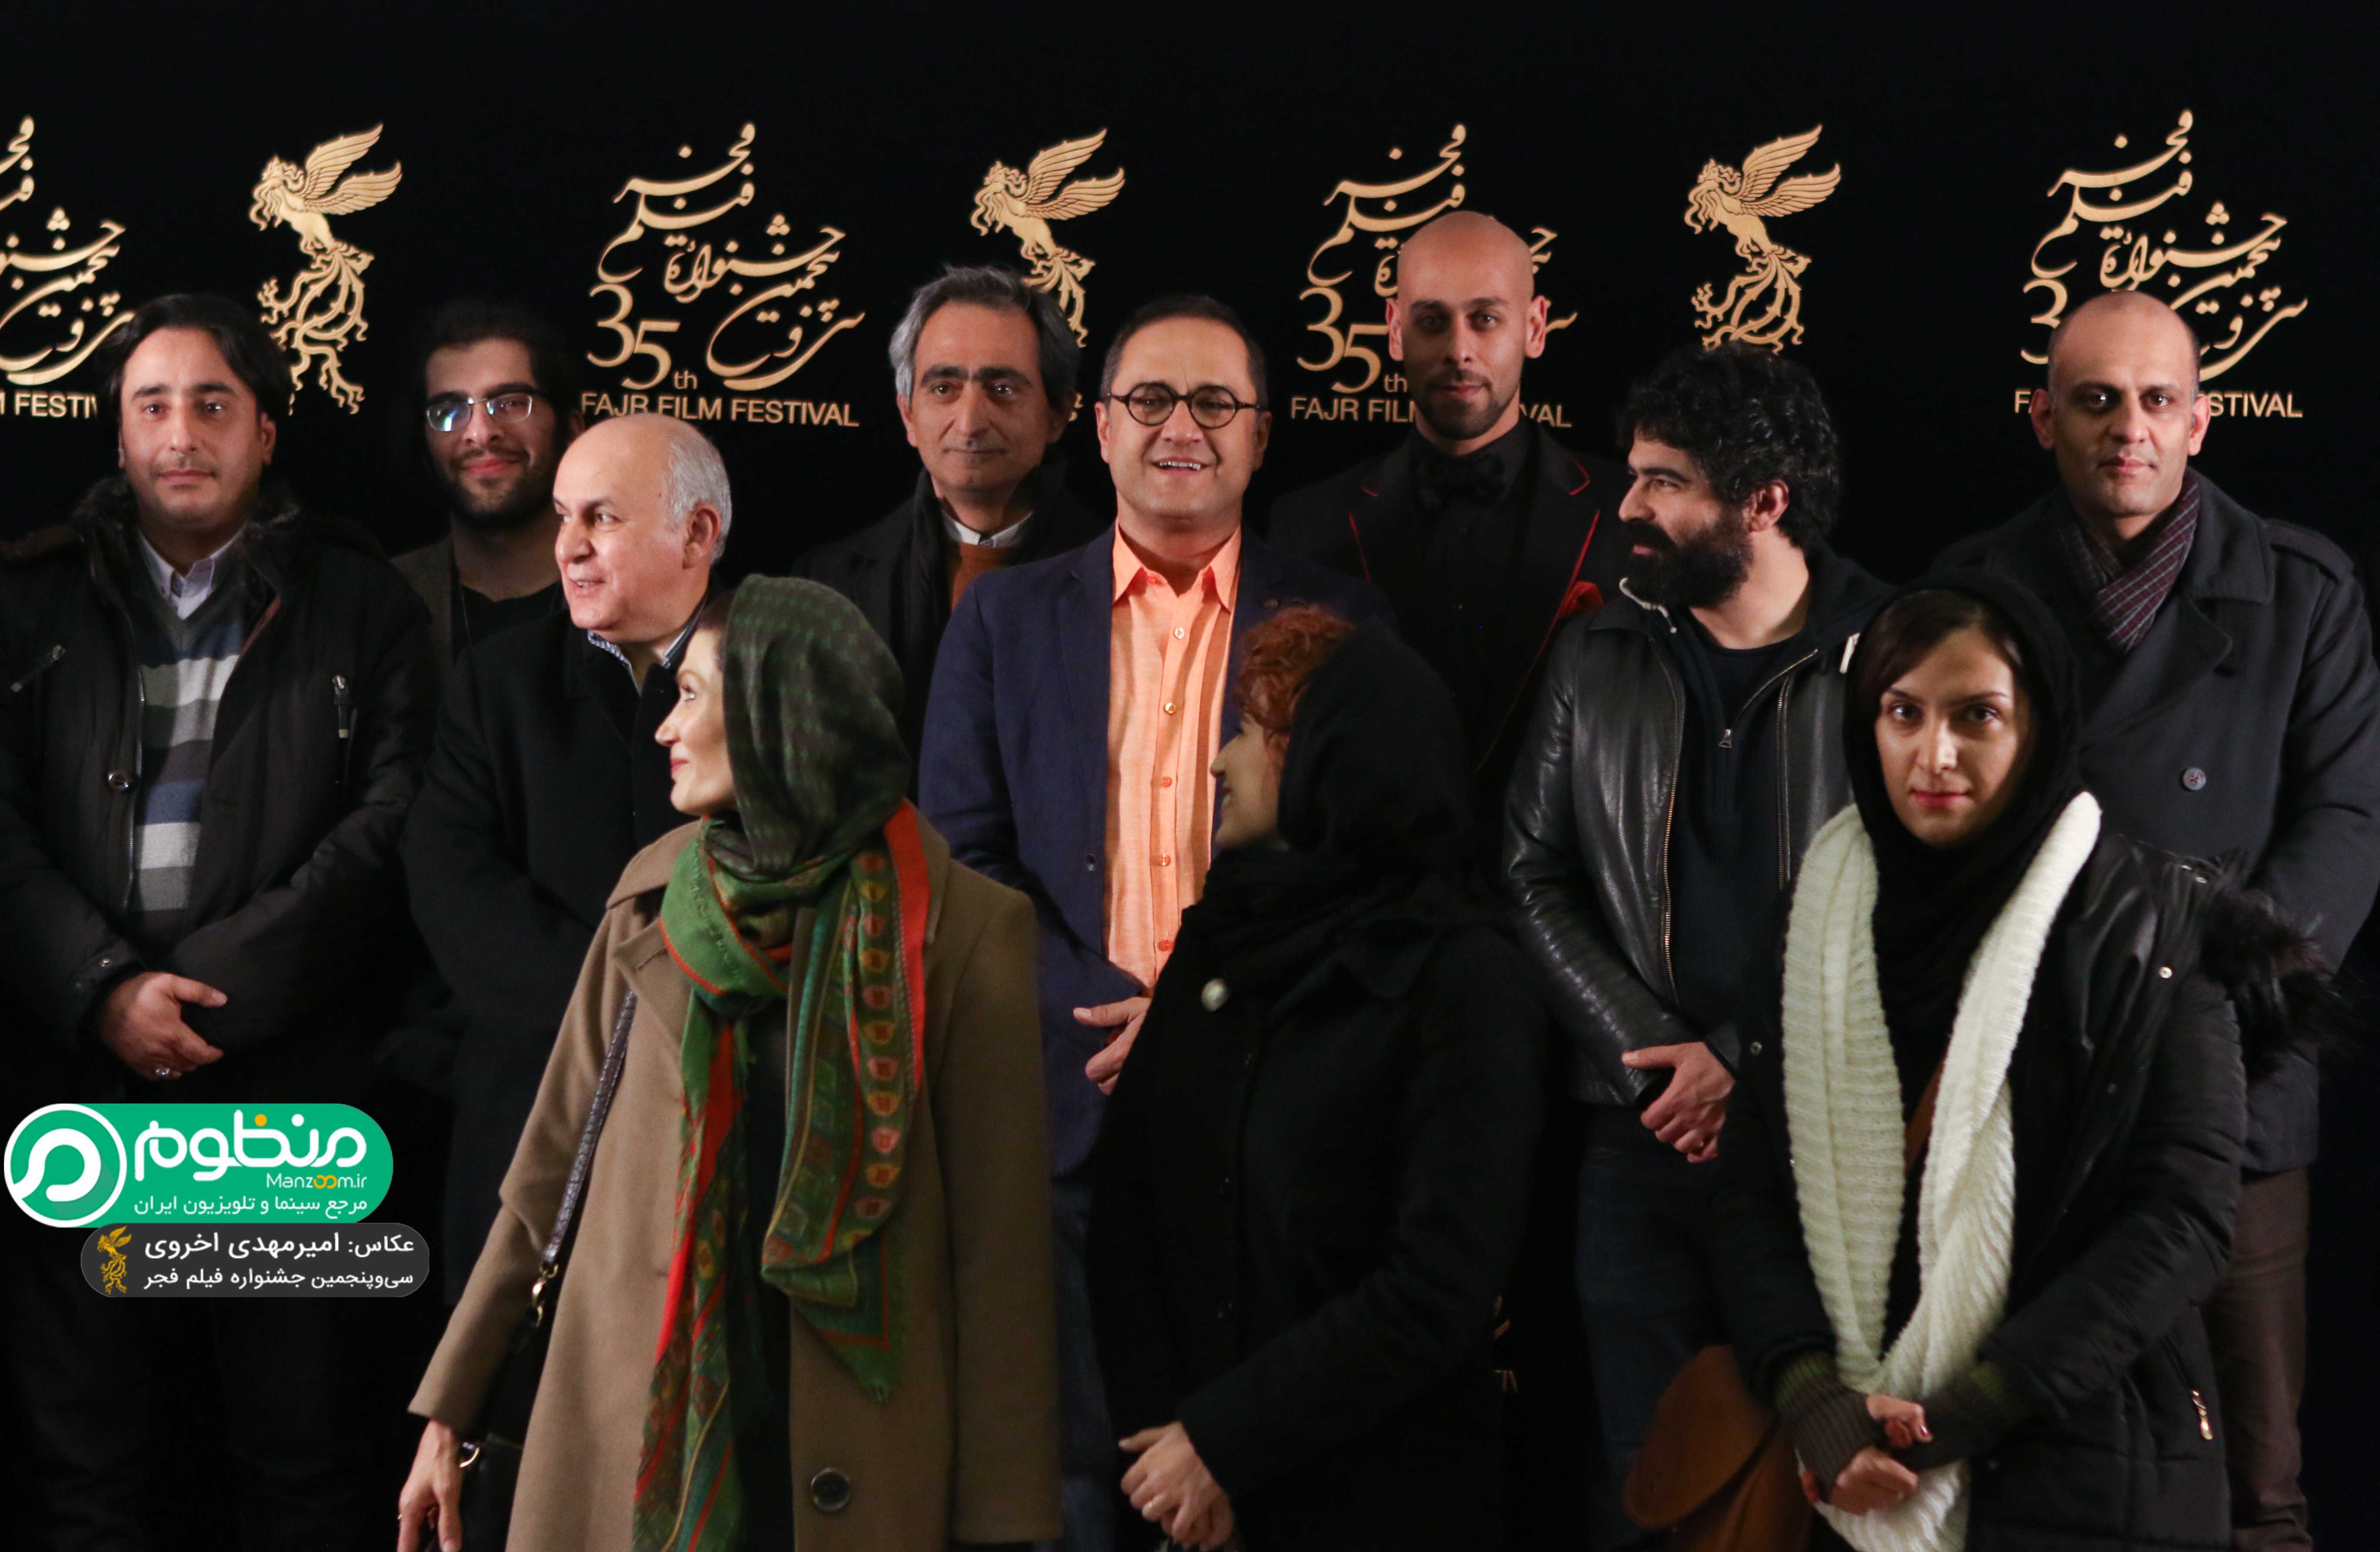 بهرام بدخشانی در اکران افتتاحیه فیلم سینمایی نگار به همراه رامبد جوان